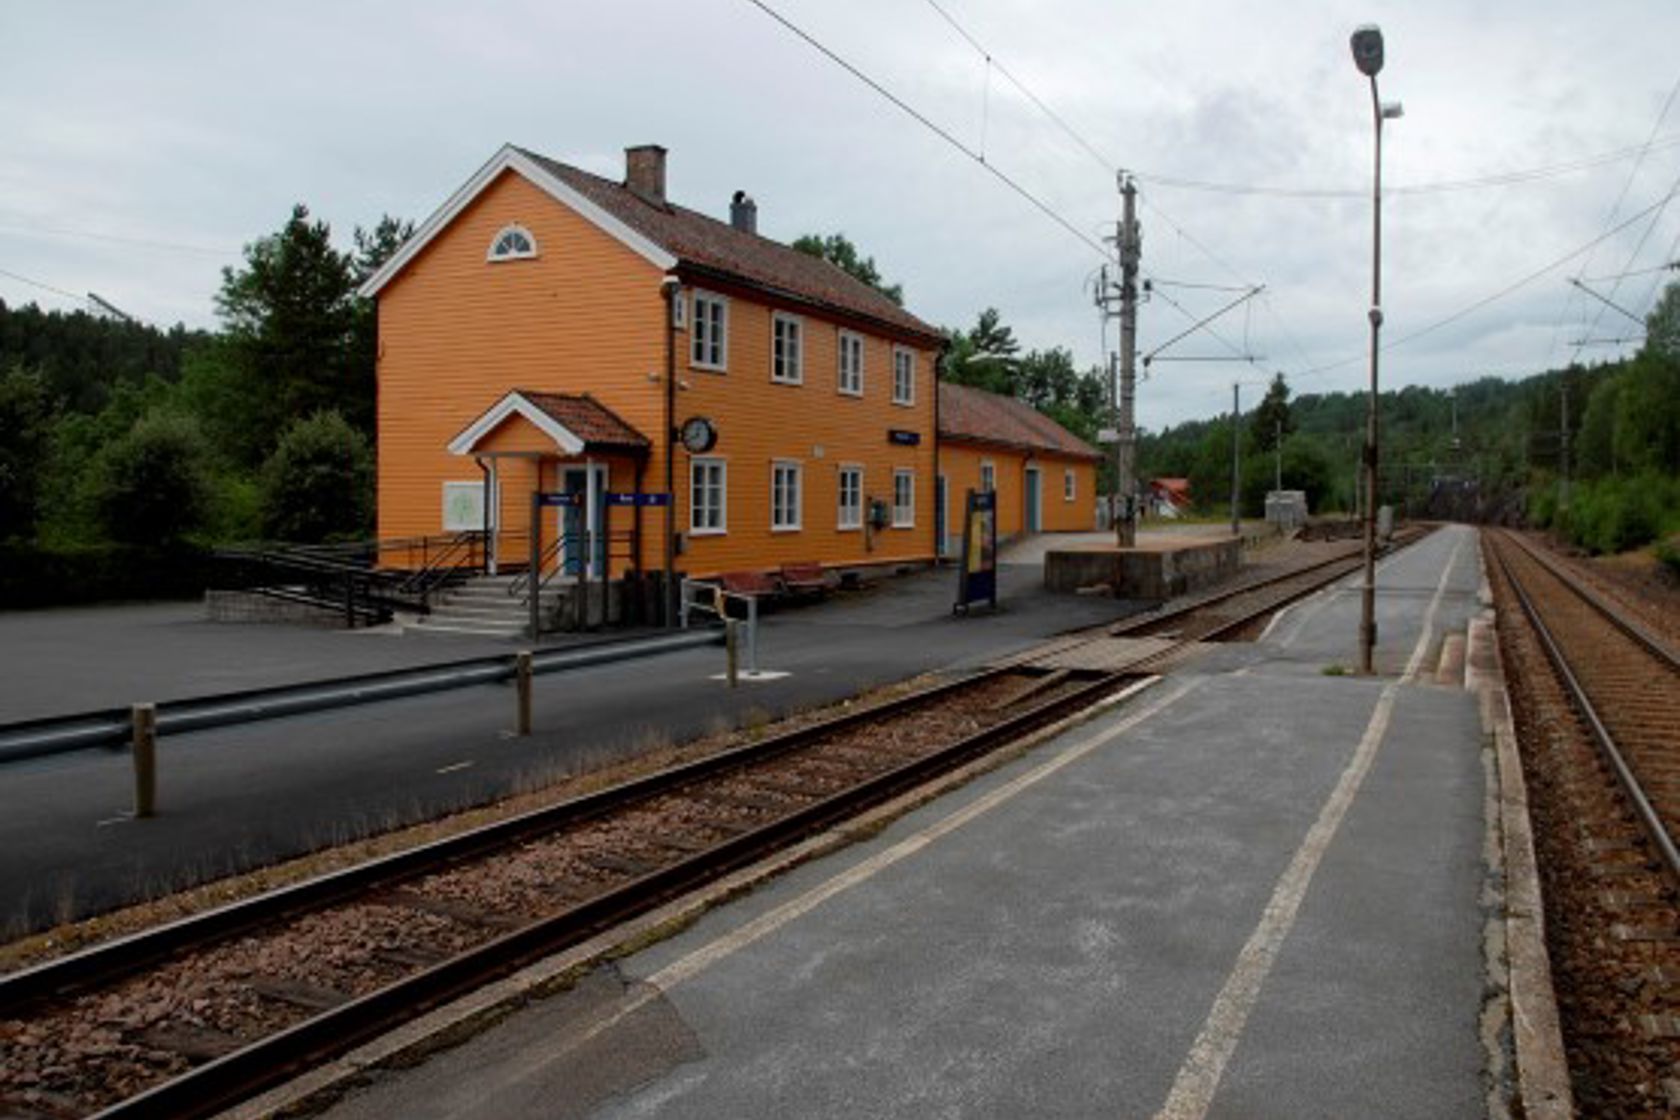 Exterior view of Vegårshei station